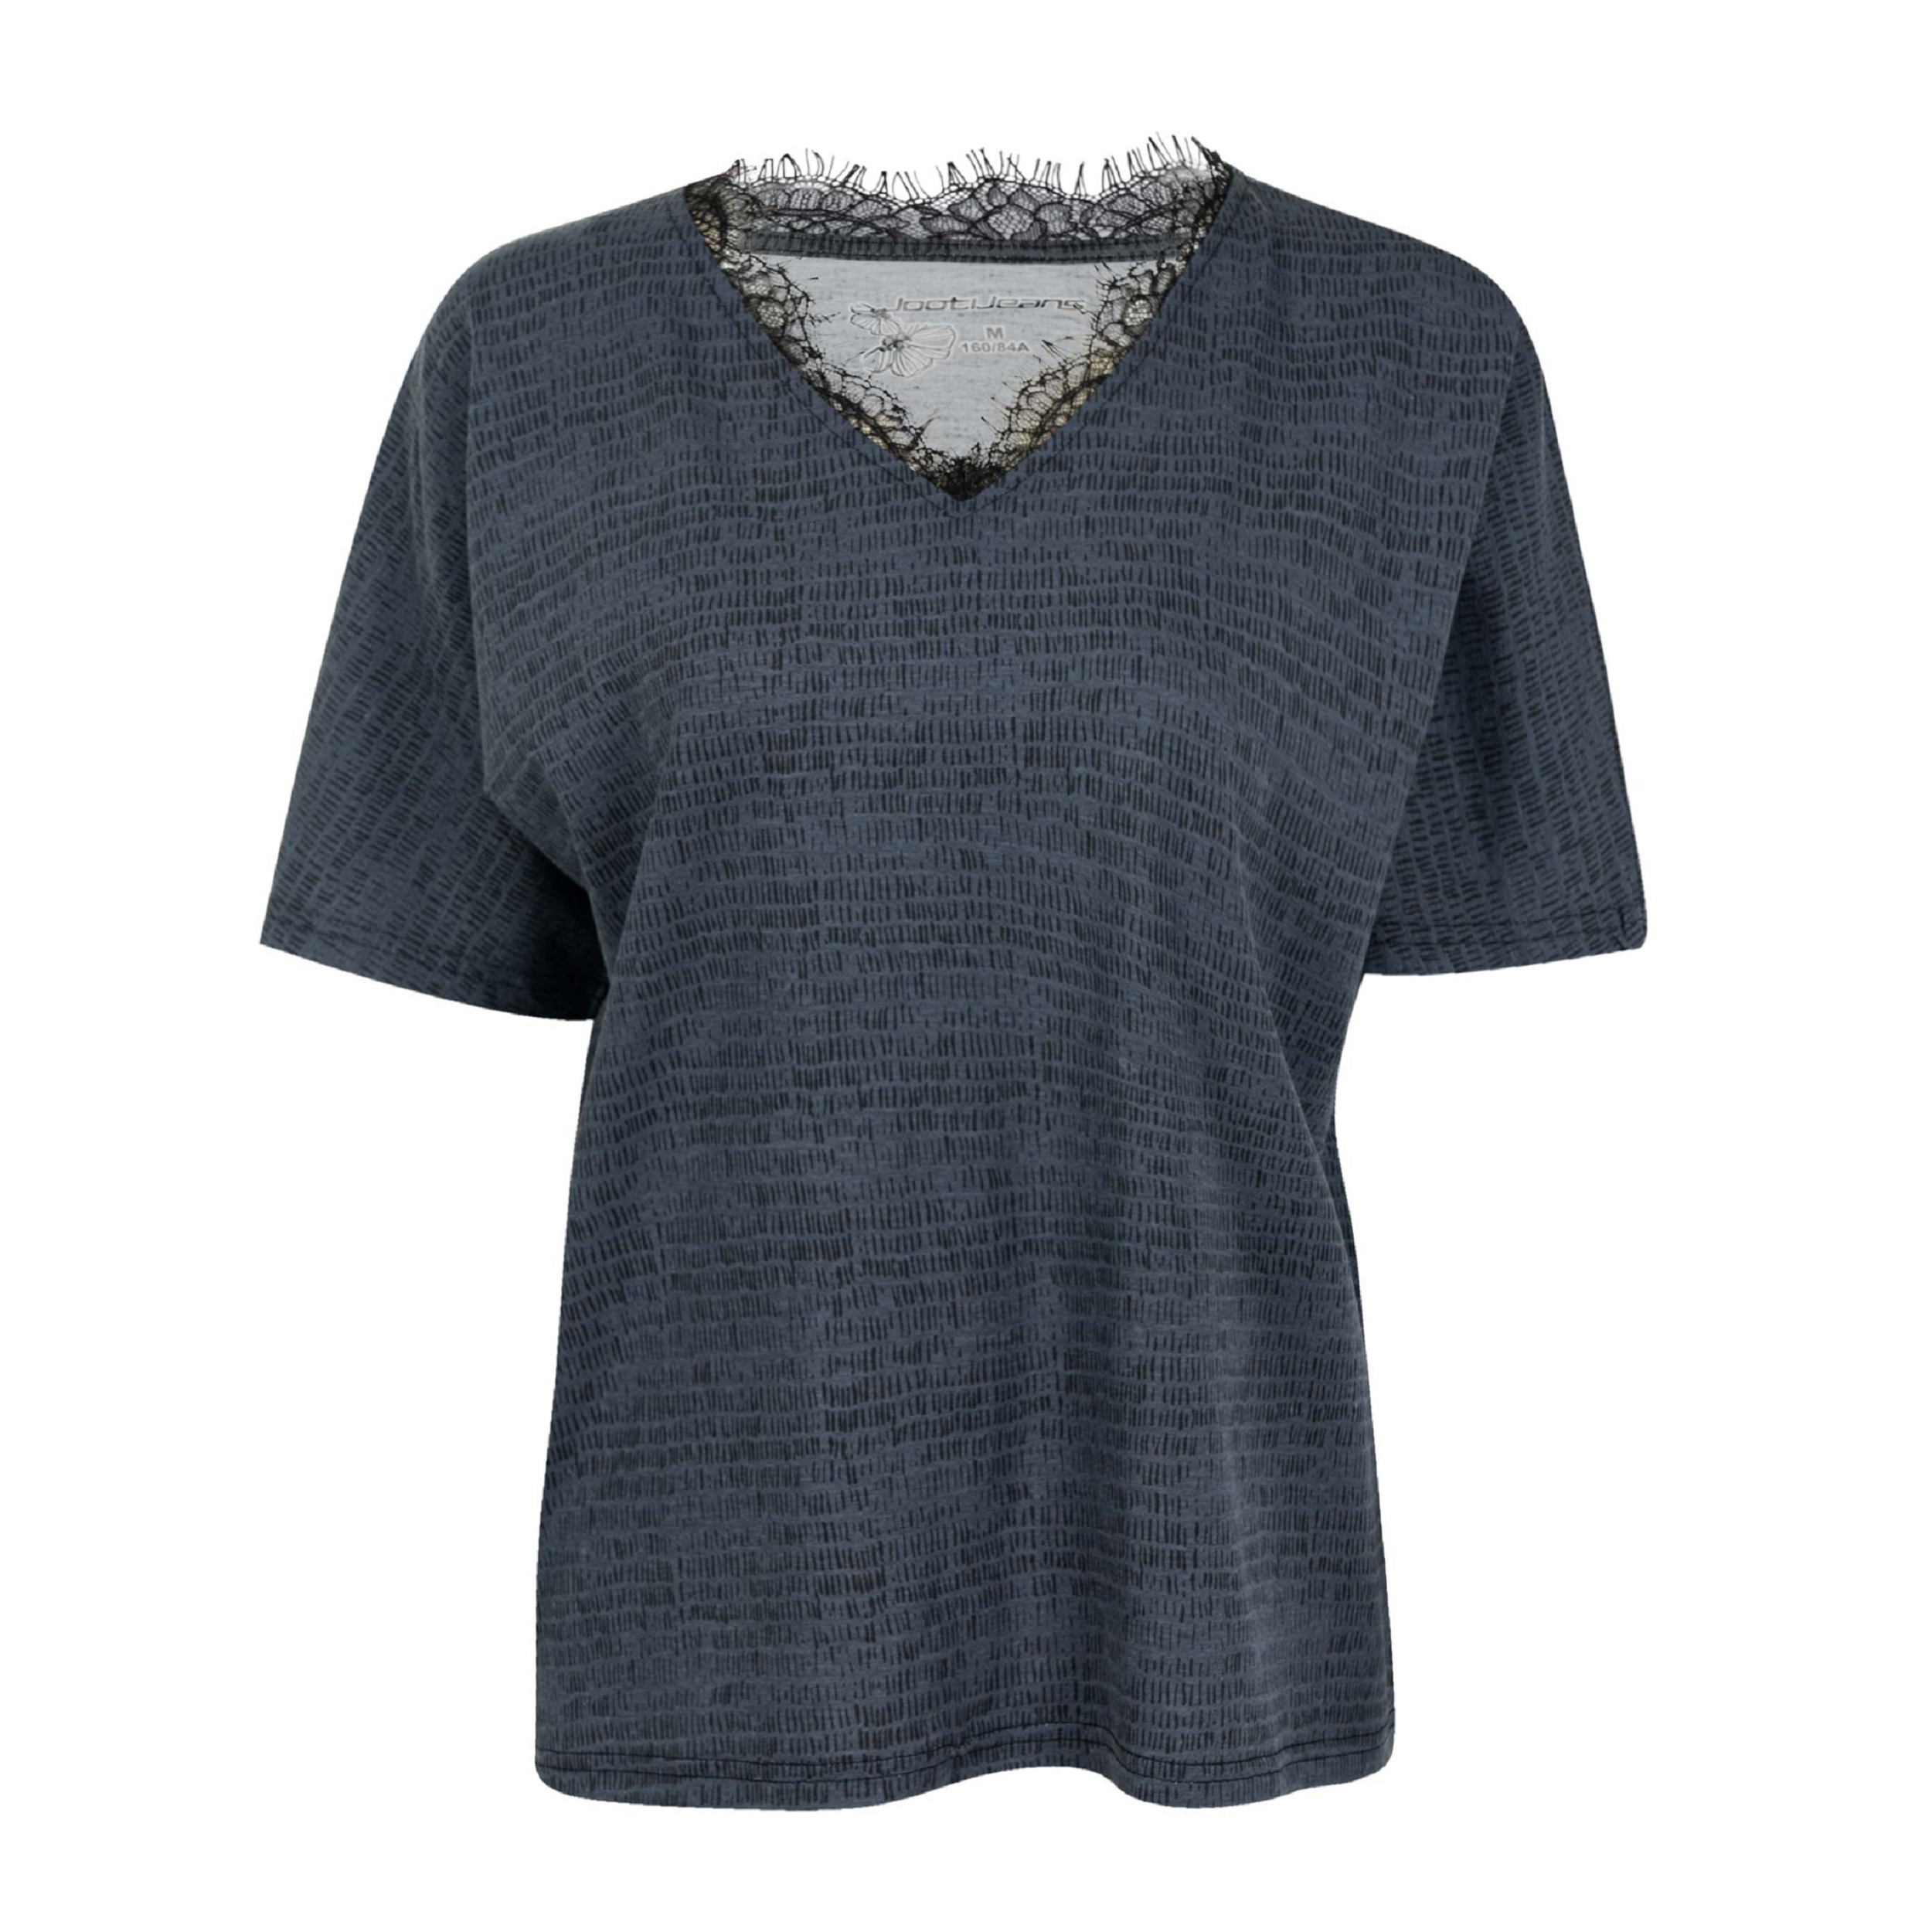 تی شرت آستین کوتاه زنانه جوتی جینز مدل یقه هفت کد 1551215 رنگ طوسی تیره